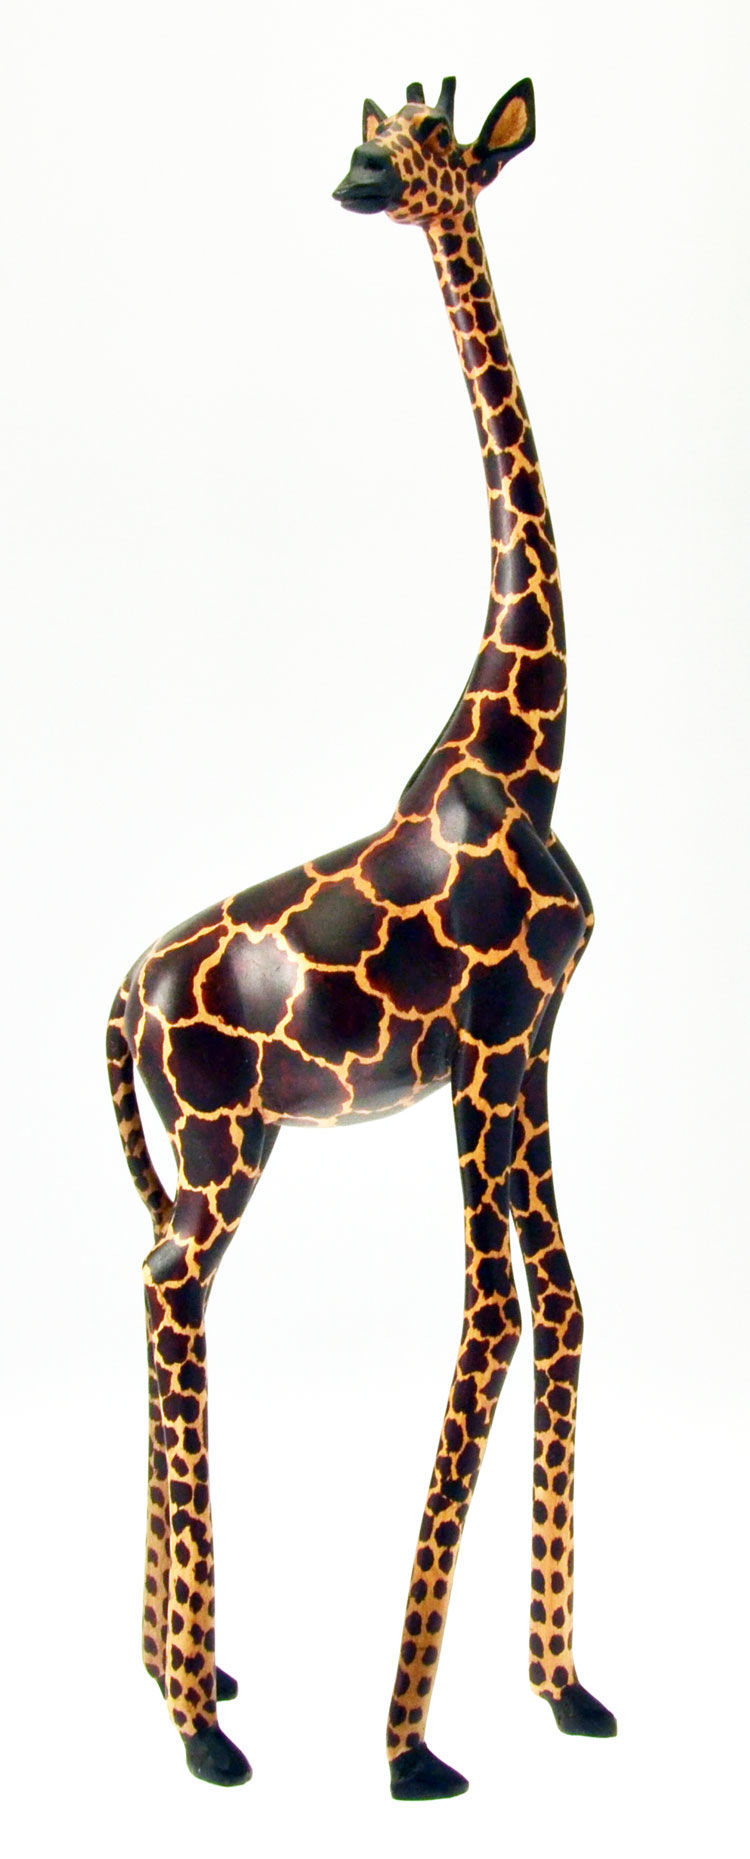 Giraffa piccola miniatura in legno naturale bamboo animale marca Hape 